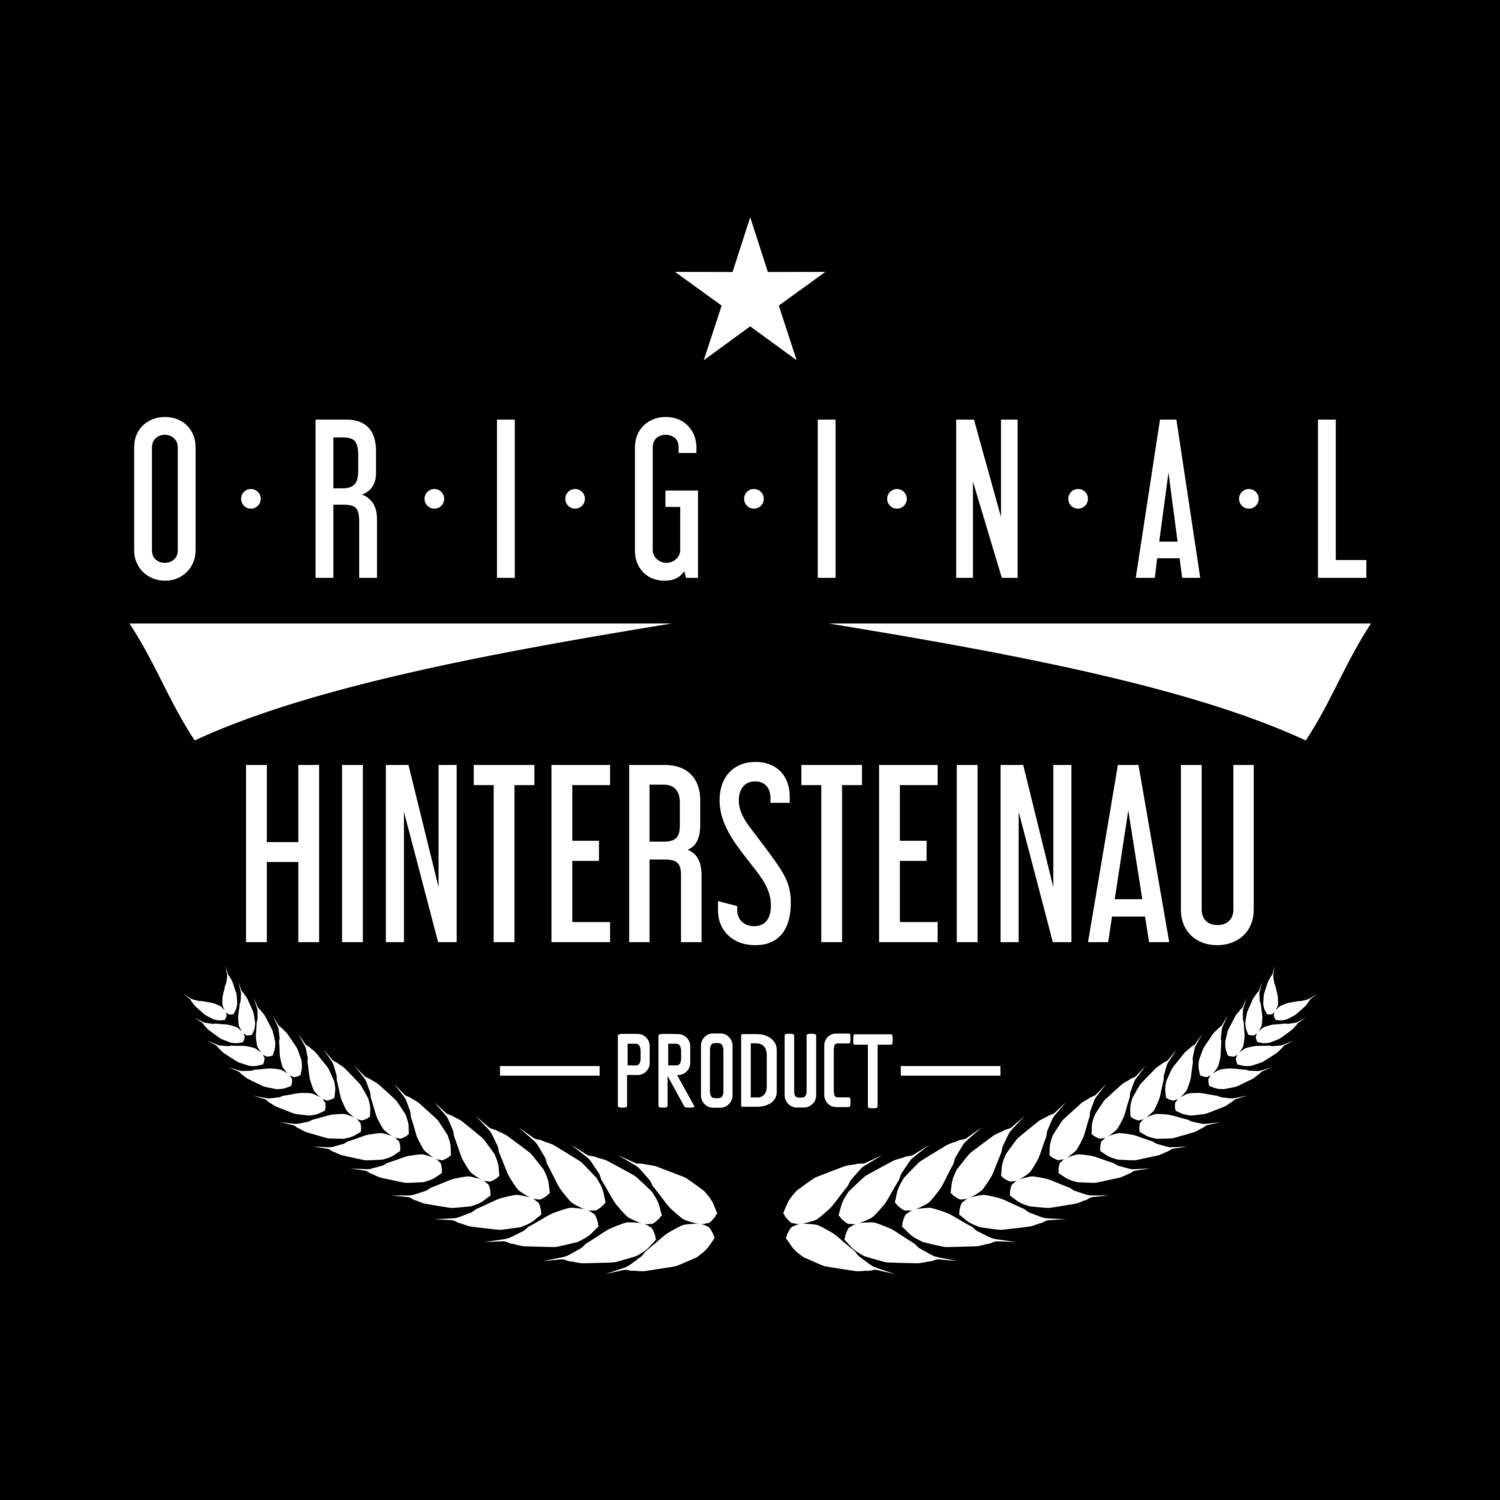 Hintersteinau T-Shirt »Original Product«